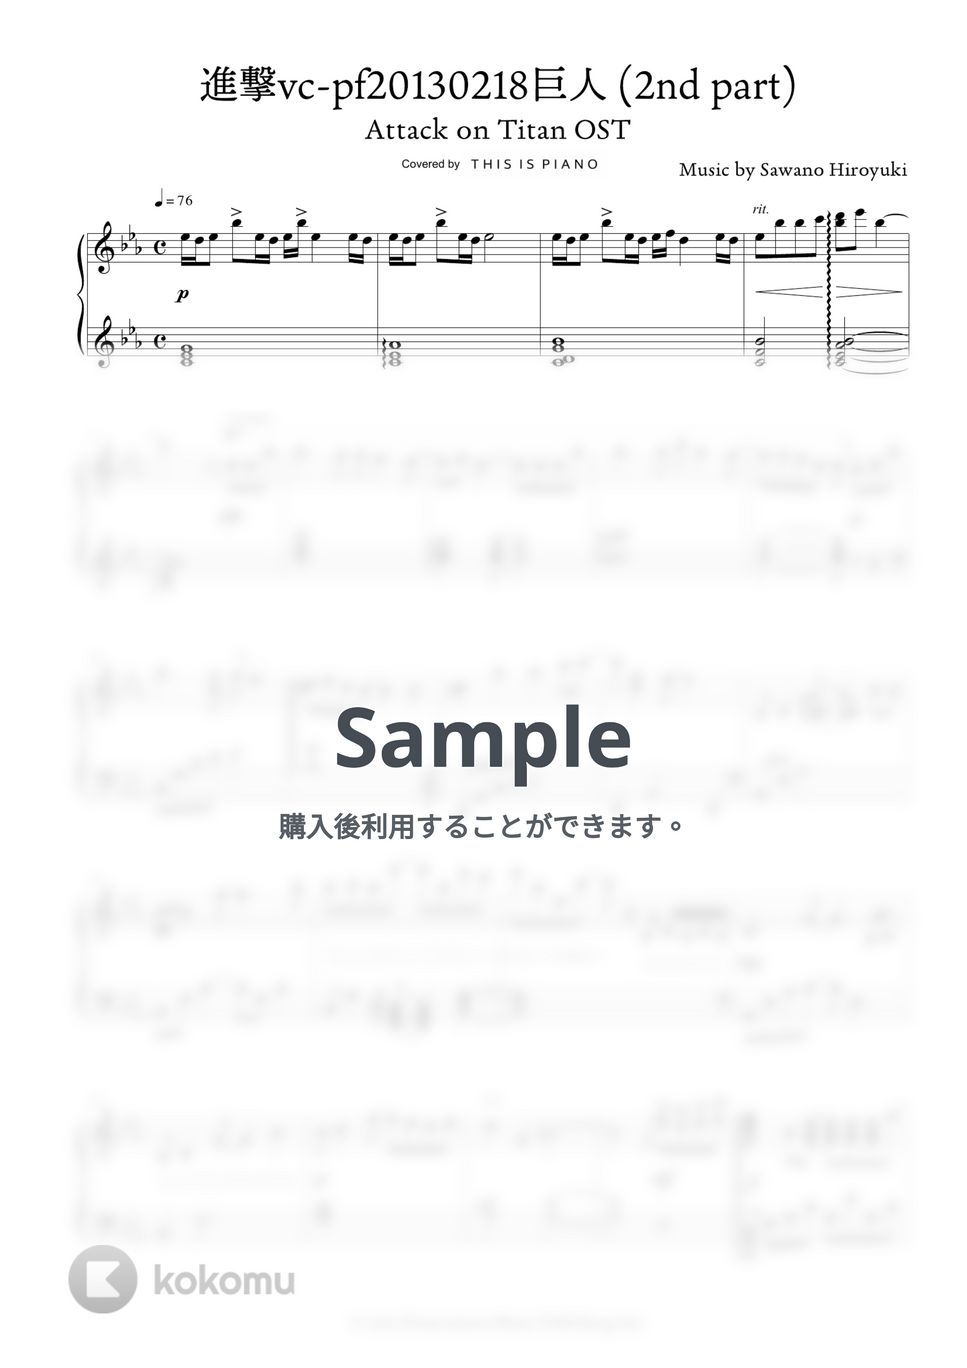 澤野弘之 - 進撃vc-pf20130218巨人 (2nd part) (進撃の巨人 OST) by THIS IS PIANO